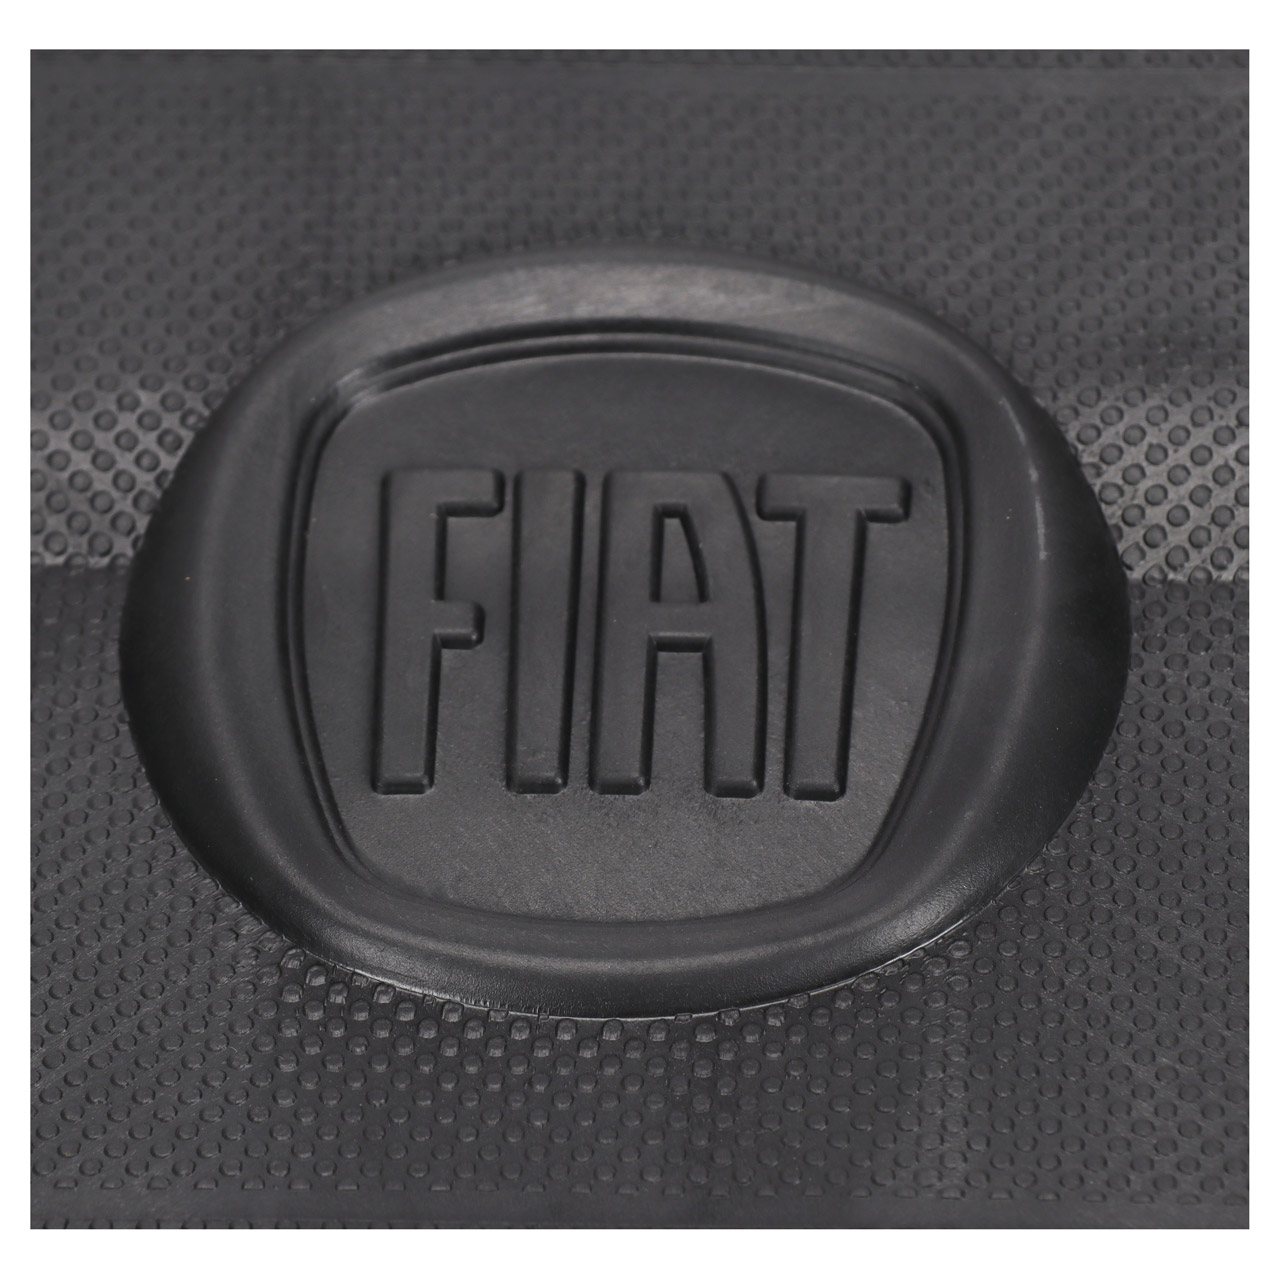 ORIGINAL Fiat Luftfiltergehäuse + Luftfilter Bravo 1.4 Benzin 51806863